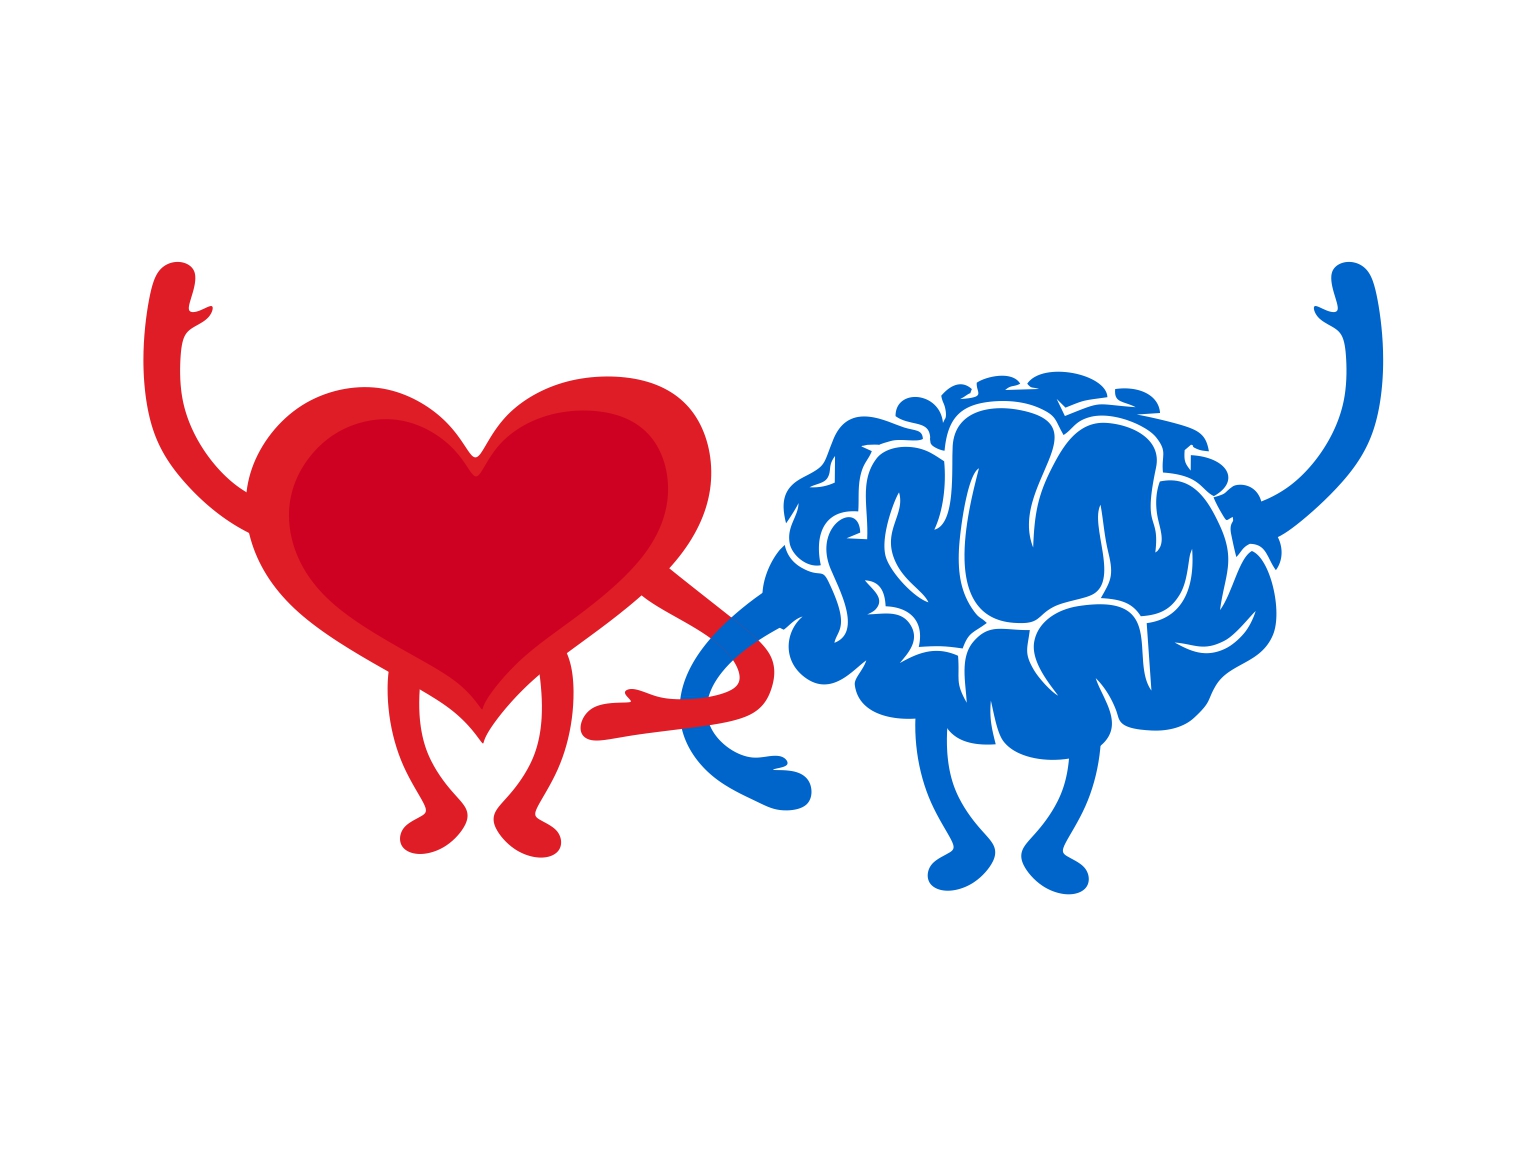 У сердца есть мозг. Мозг и сердце. Мозг с сердечком. Мозги и сердце. Конфликт мозга и сердца.